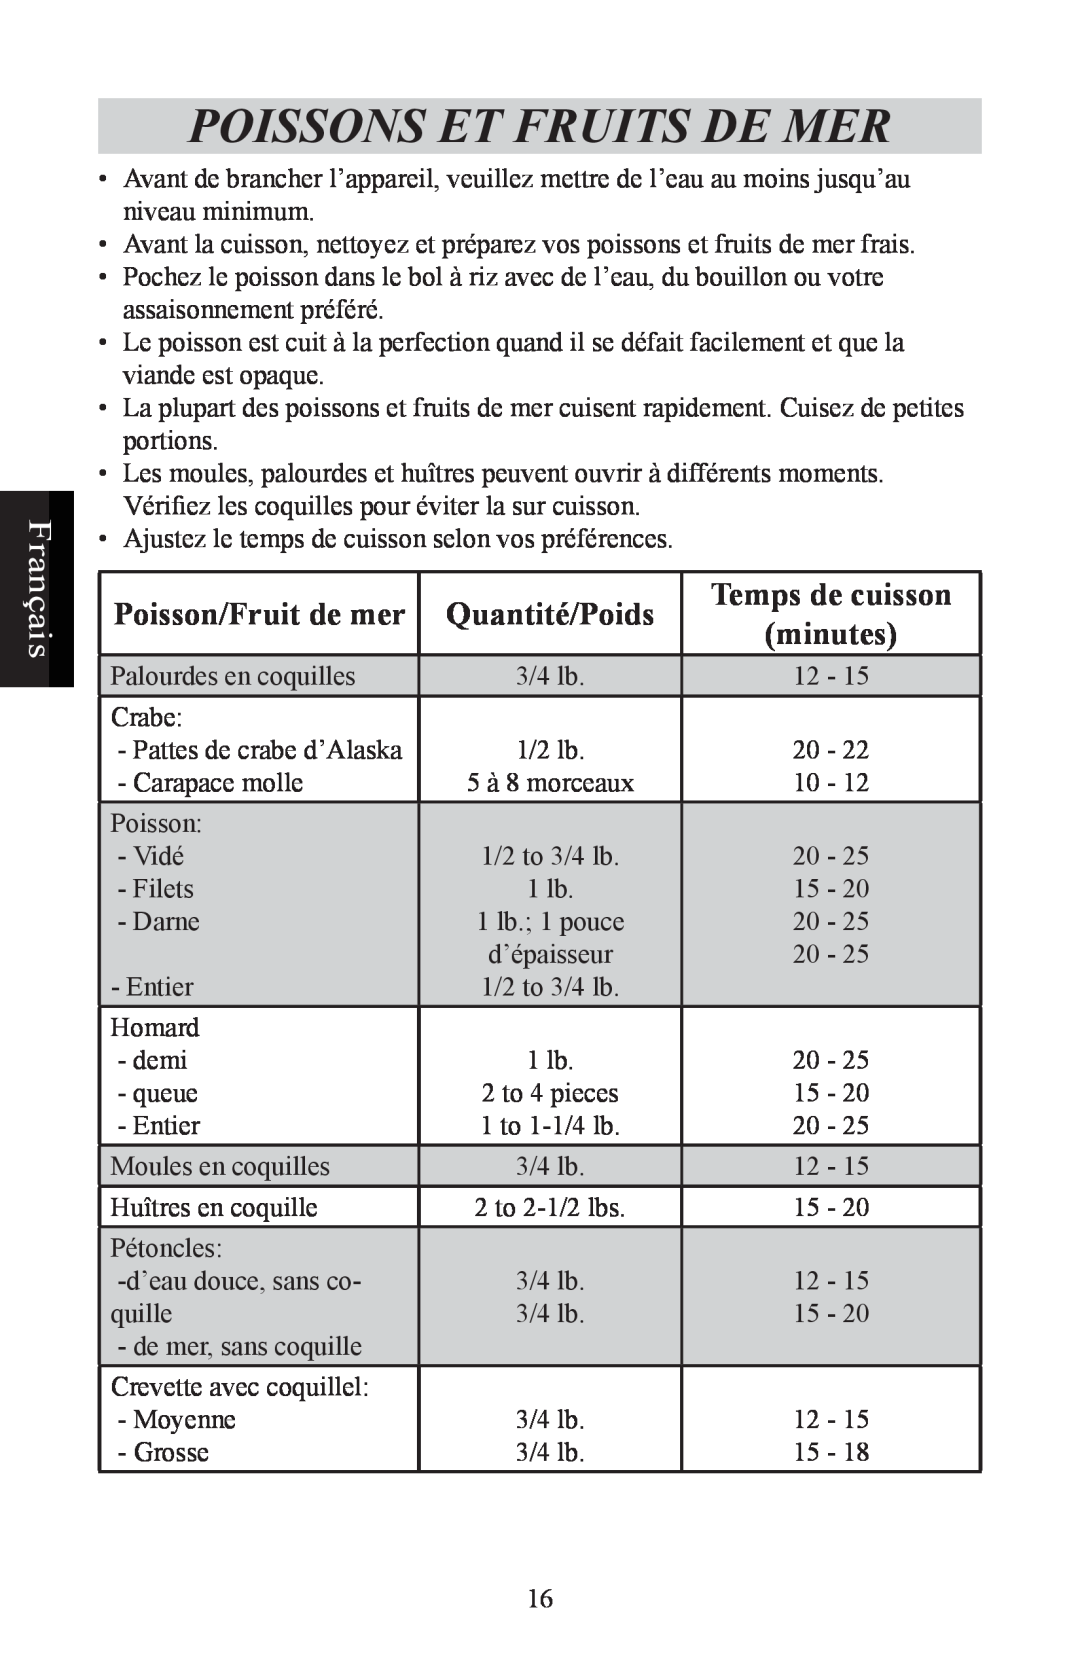 Nesco ST-24 manual Poissons Et Fruits De Mer, Poisson/Fruit de mer, Temps de cuisson, minutes, Français, Quantité/Poids 